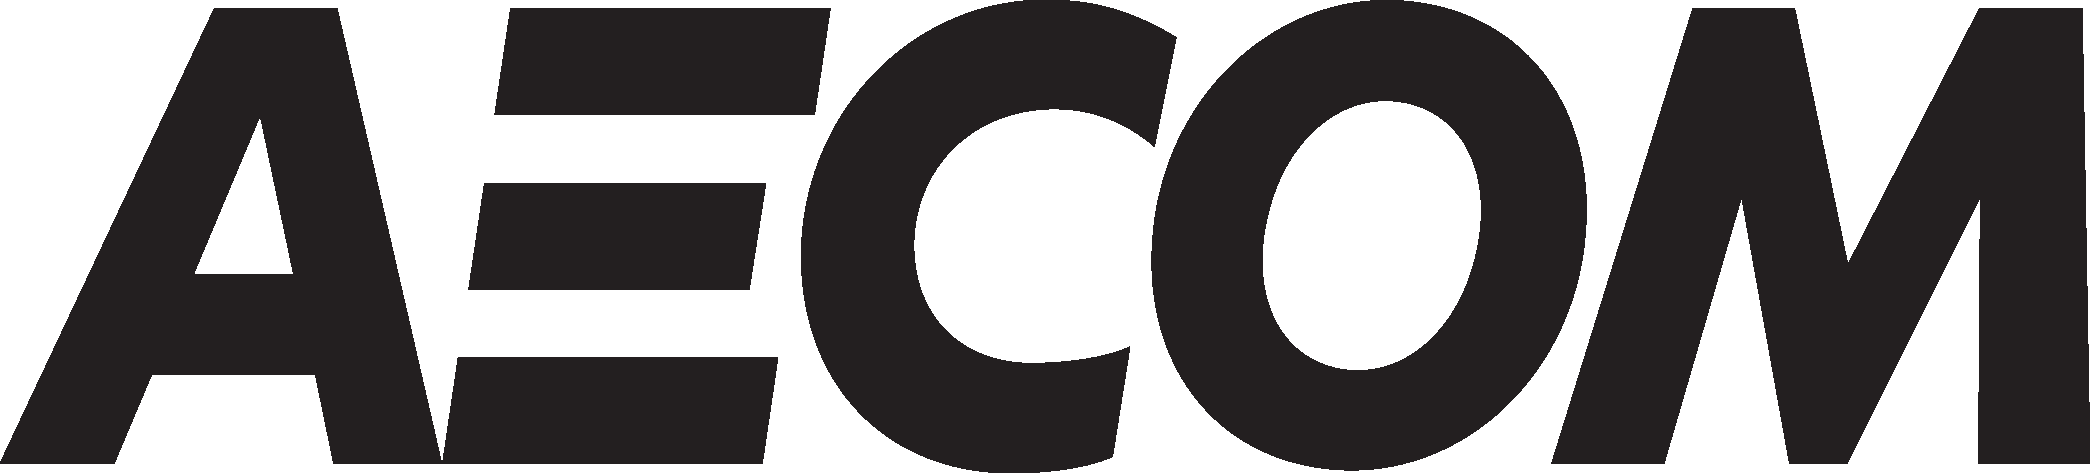 Aecom Logo png